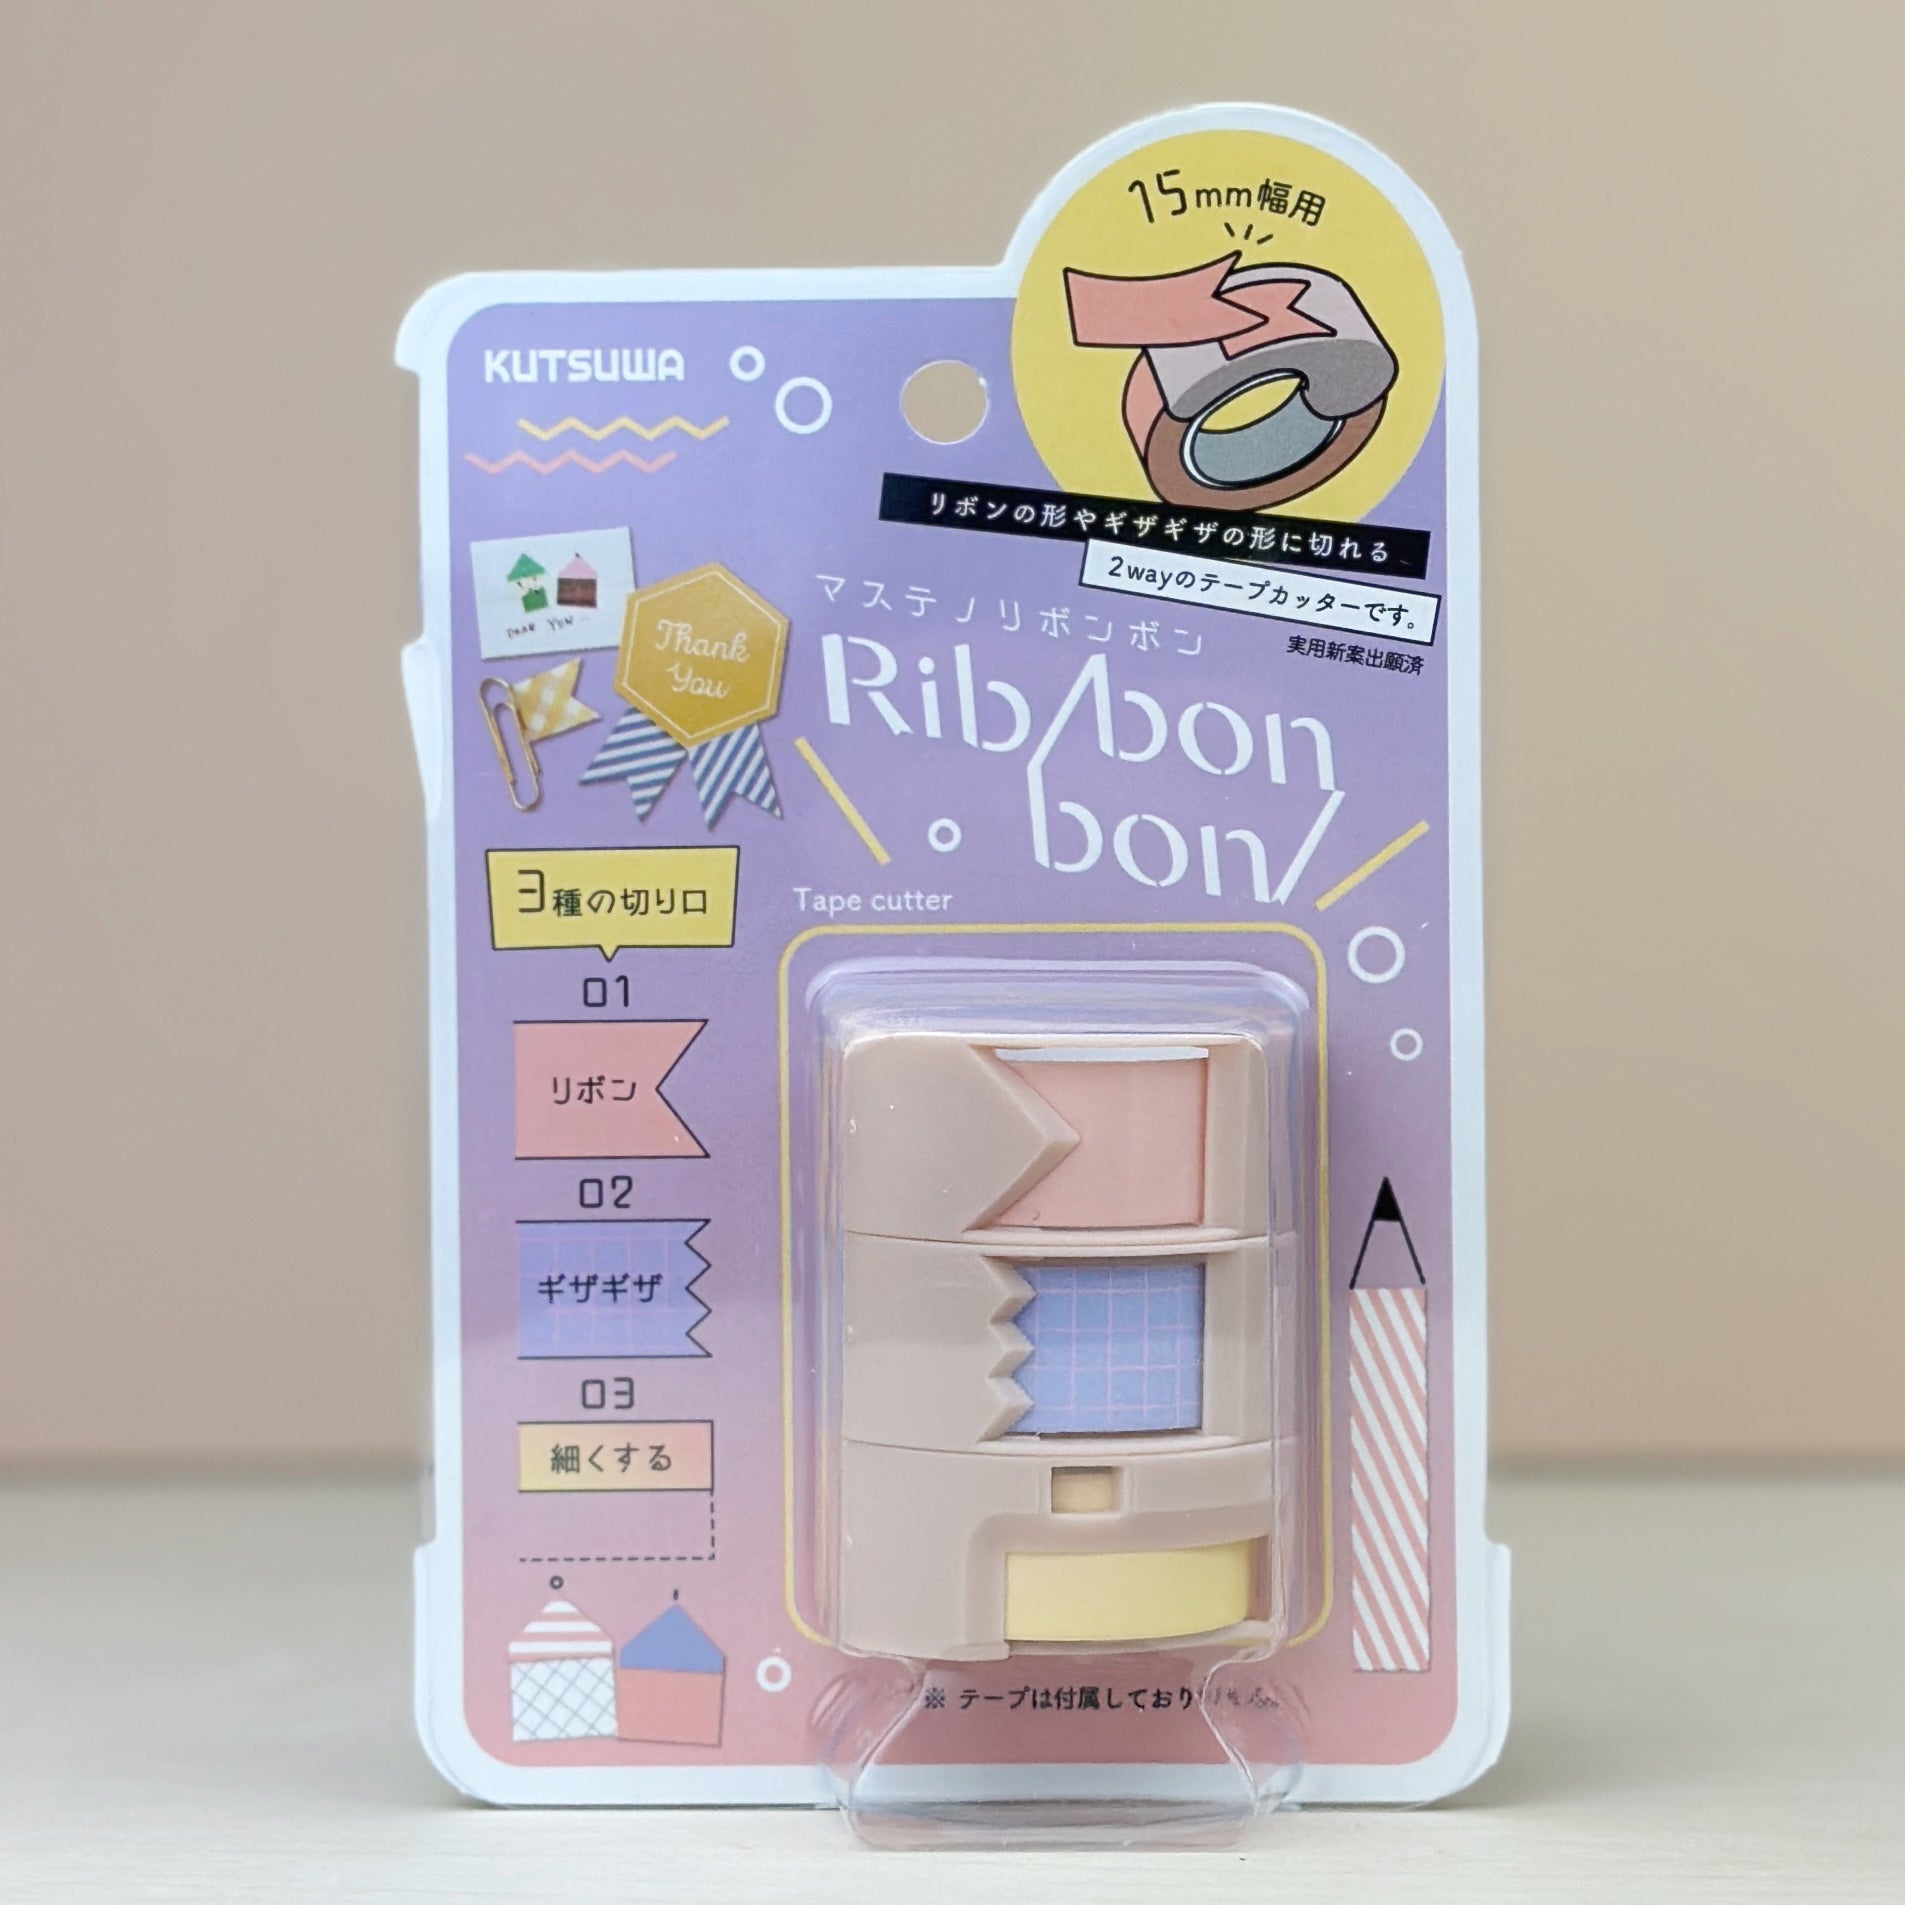 Kutsuwa Ribbon Bon 3 Way Washi Tape Cutter - Beige